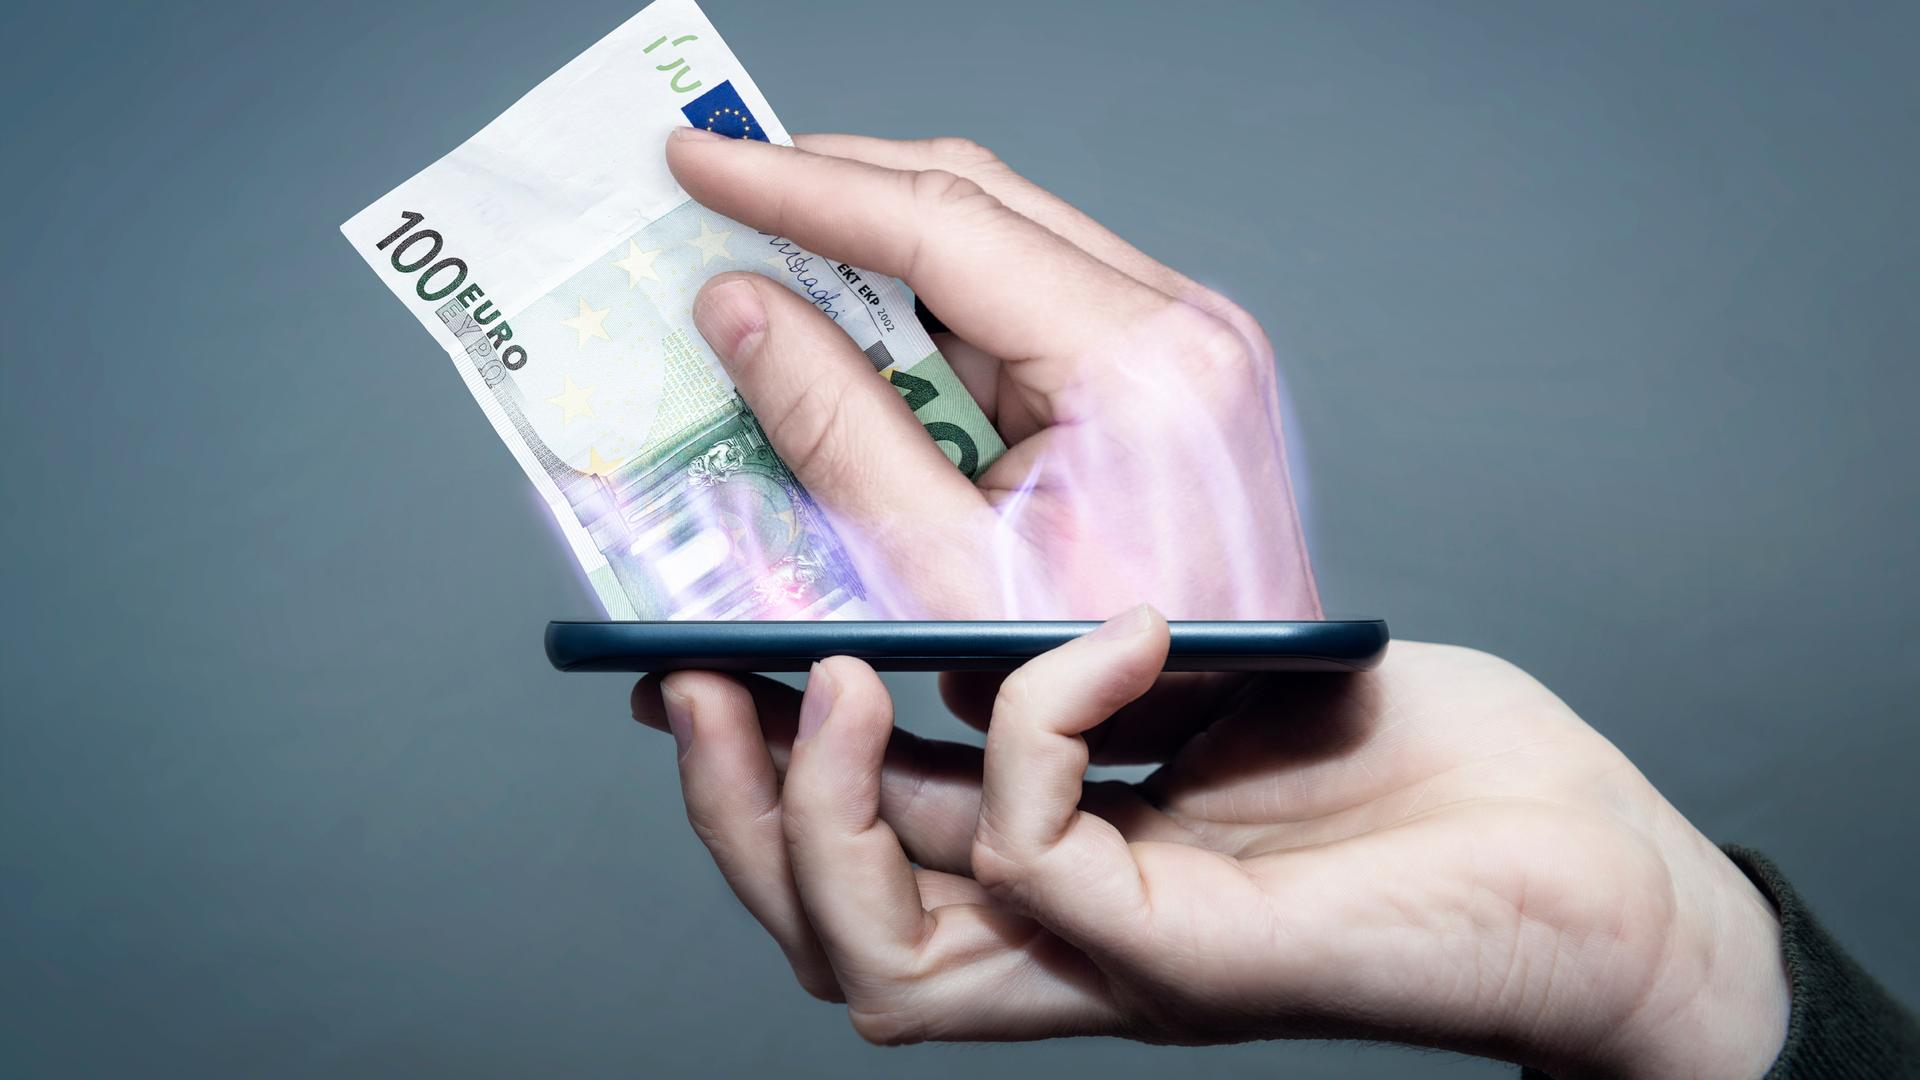 Eine Hand hält ein Smartphone, während eine andere Hand aus dem Display heraus ragt und bezahlt.